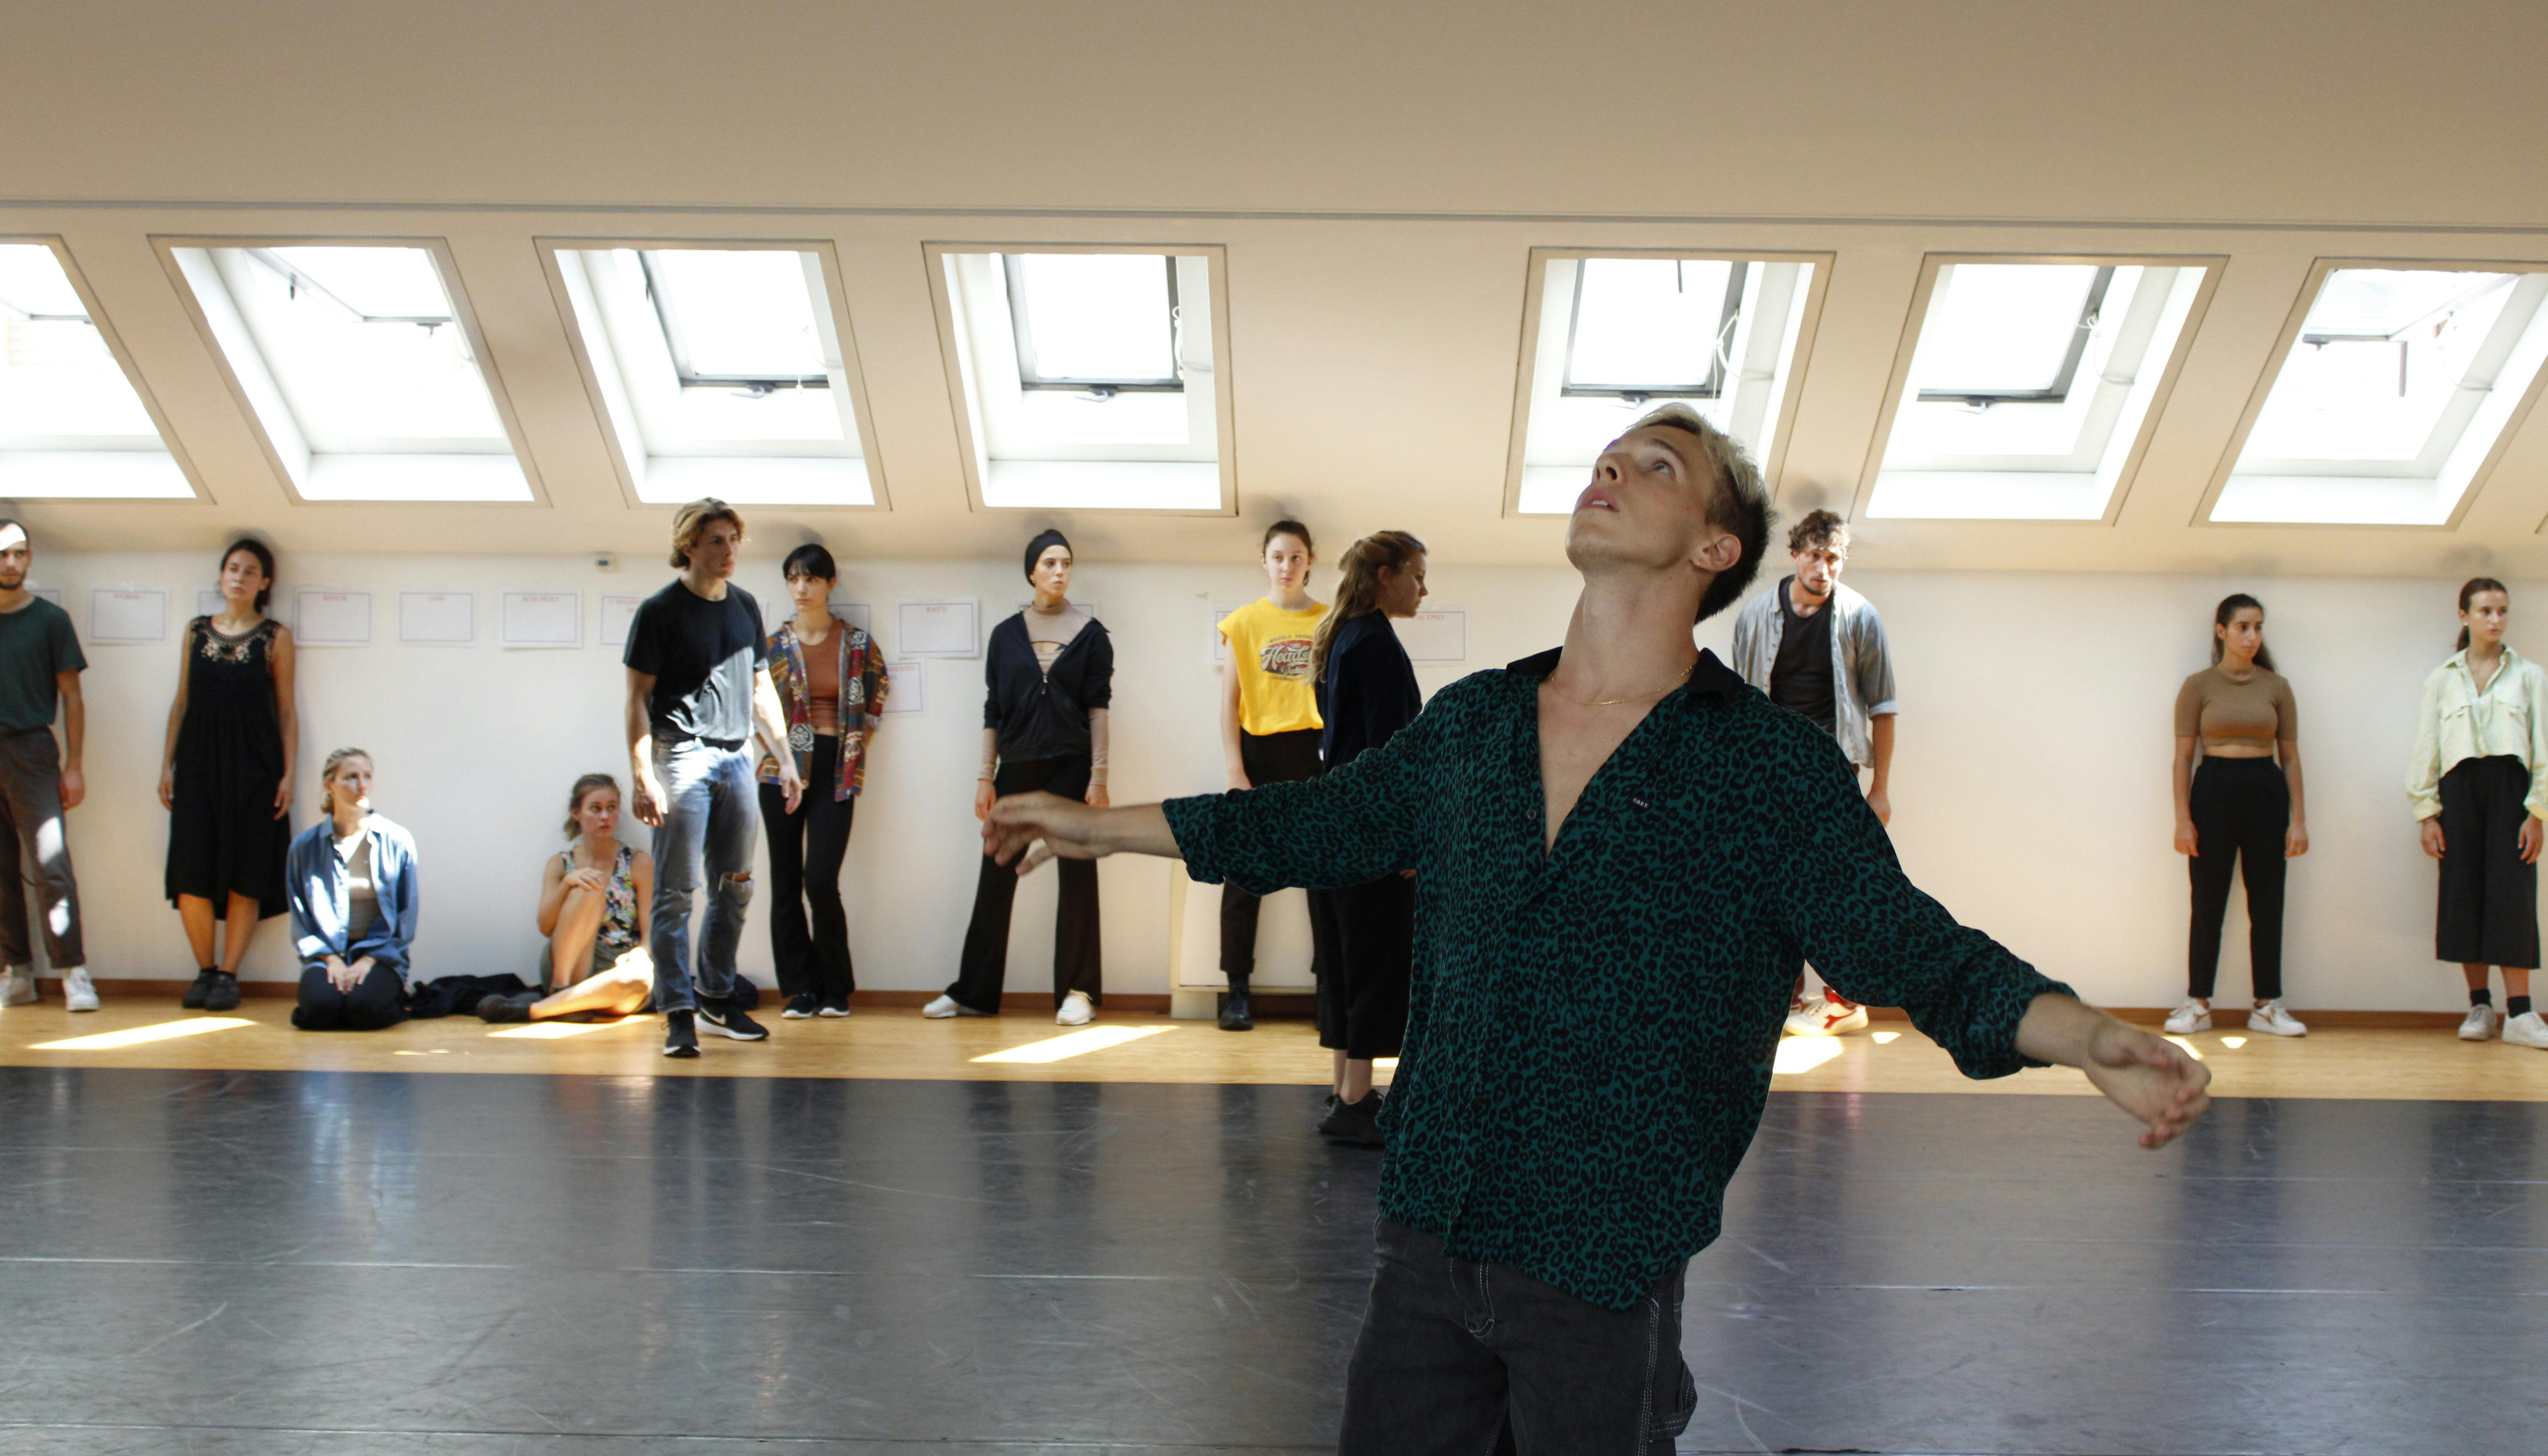 Un danzatore, in piedi al centro dello Studio, apre le braccia guardando verso l'alto. A fondo sala un gruppo di performer, appoggiati alla parete, osservano.